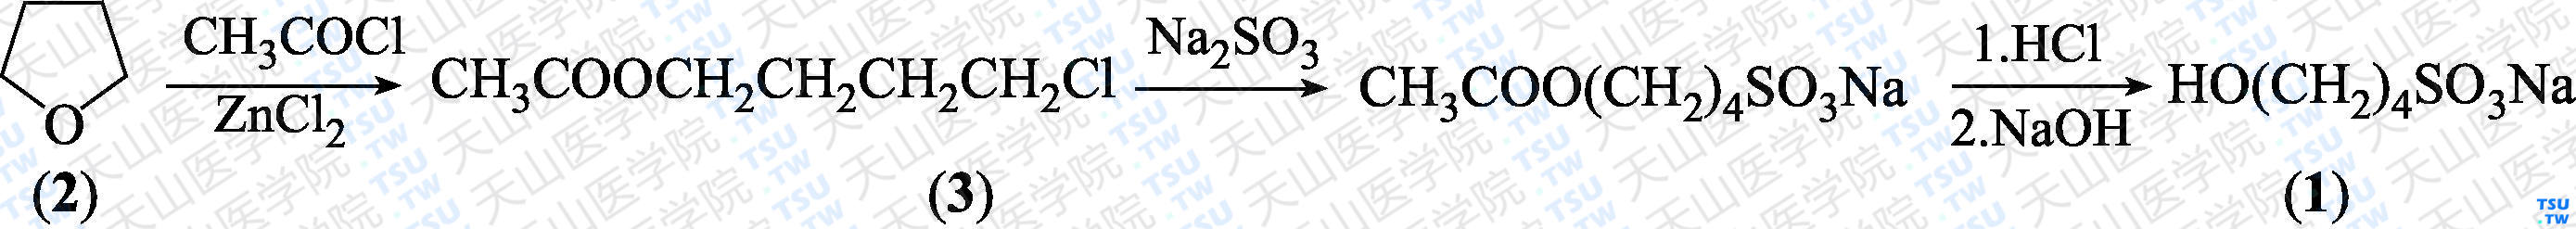 4-羟基丁基-1-磺酸钠（分子式：C<sub>4</sub>H<sub>9</sub>NaO<sub>4</sub>S）的合成方法路线及其结构式